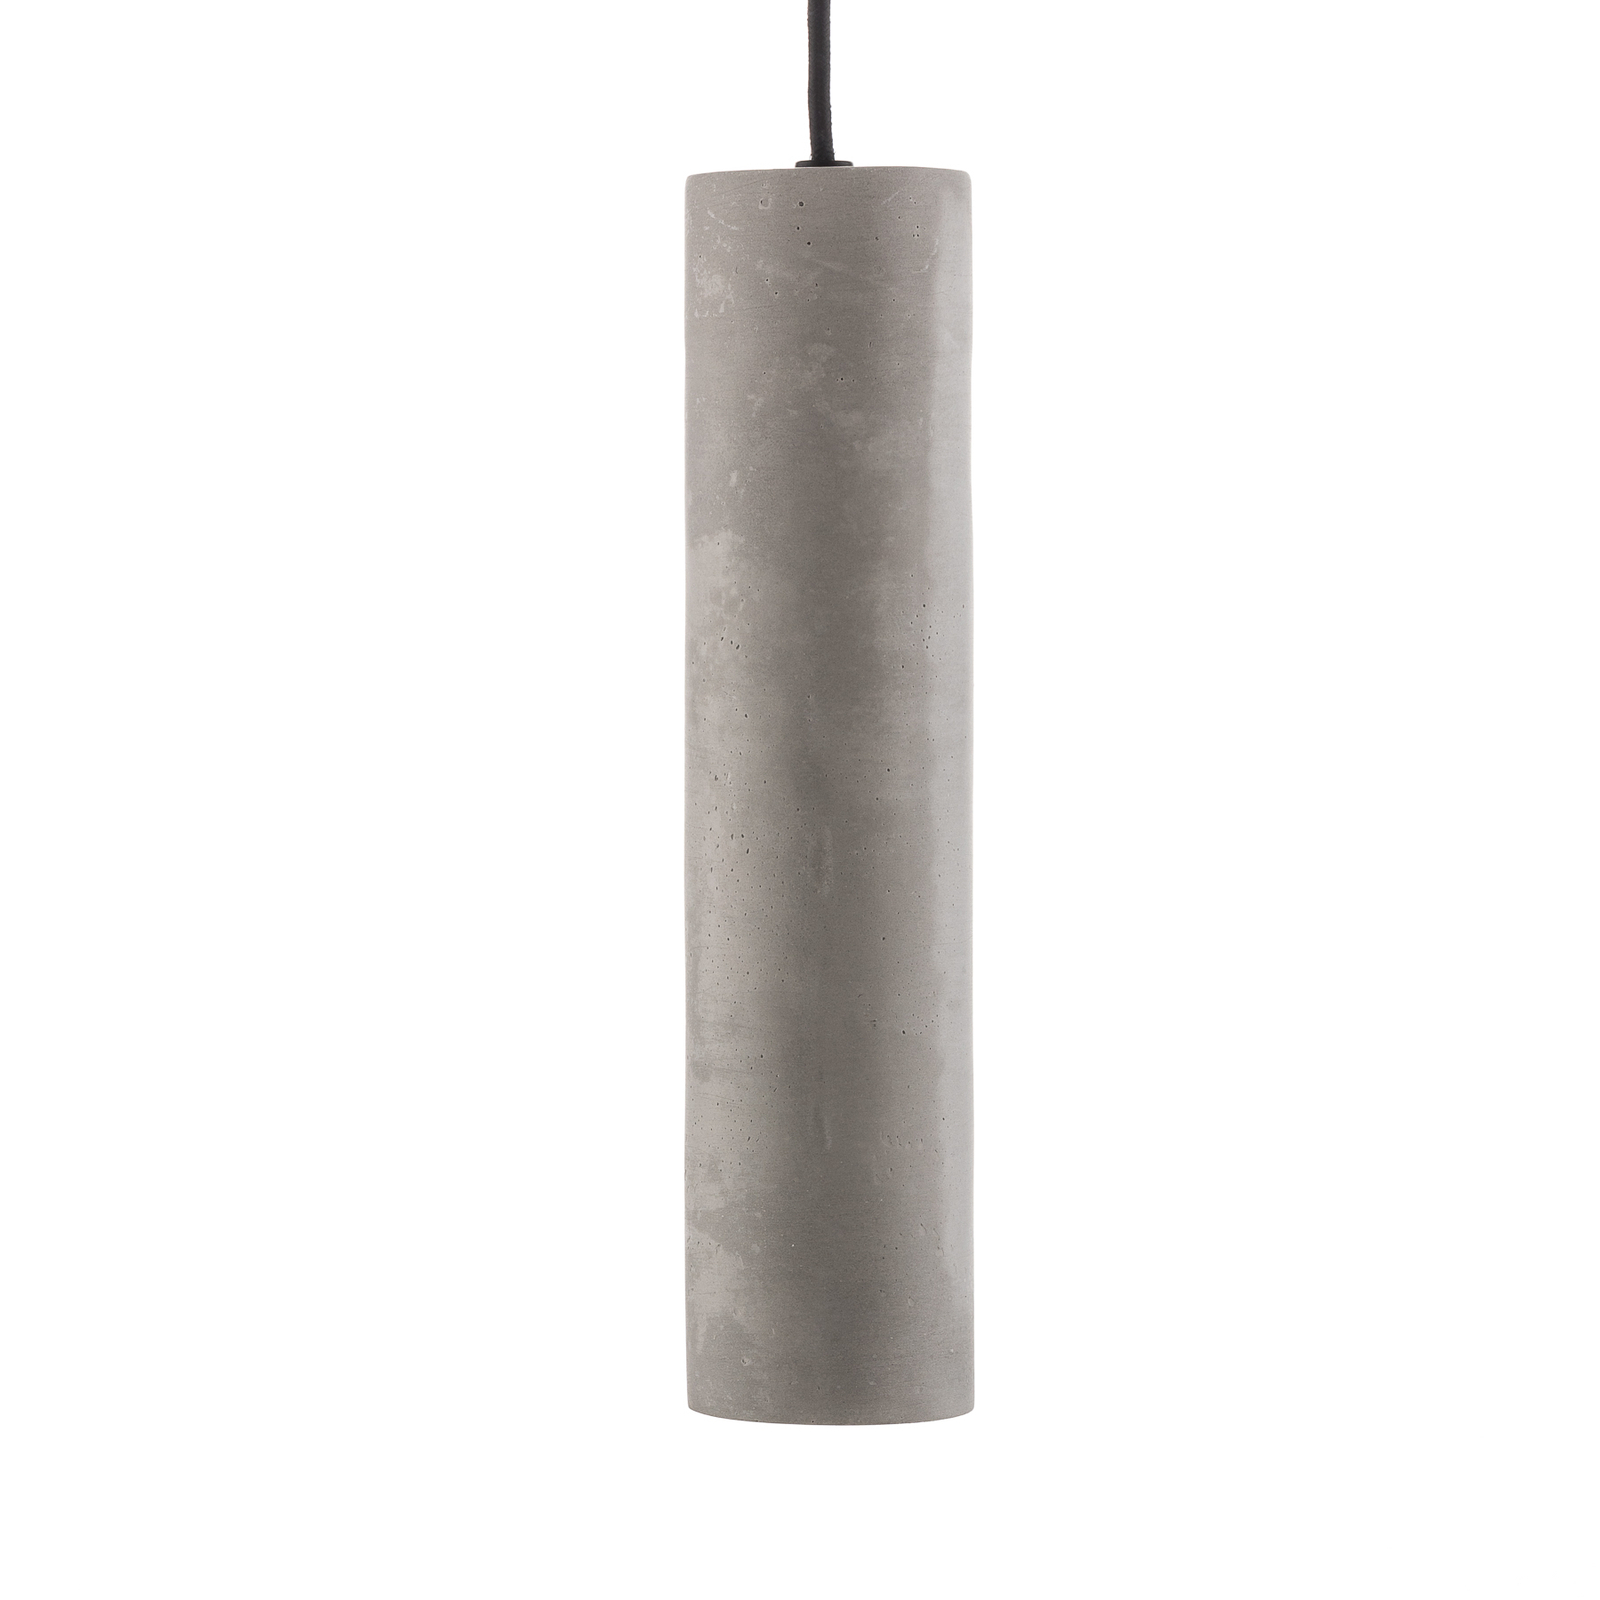 Tube hængelampe af beton, 1 lyskilde